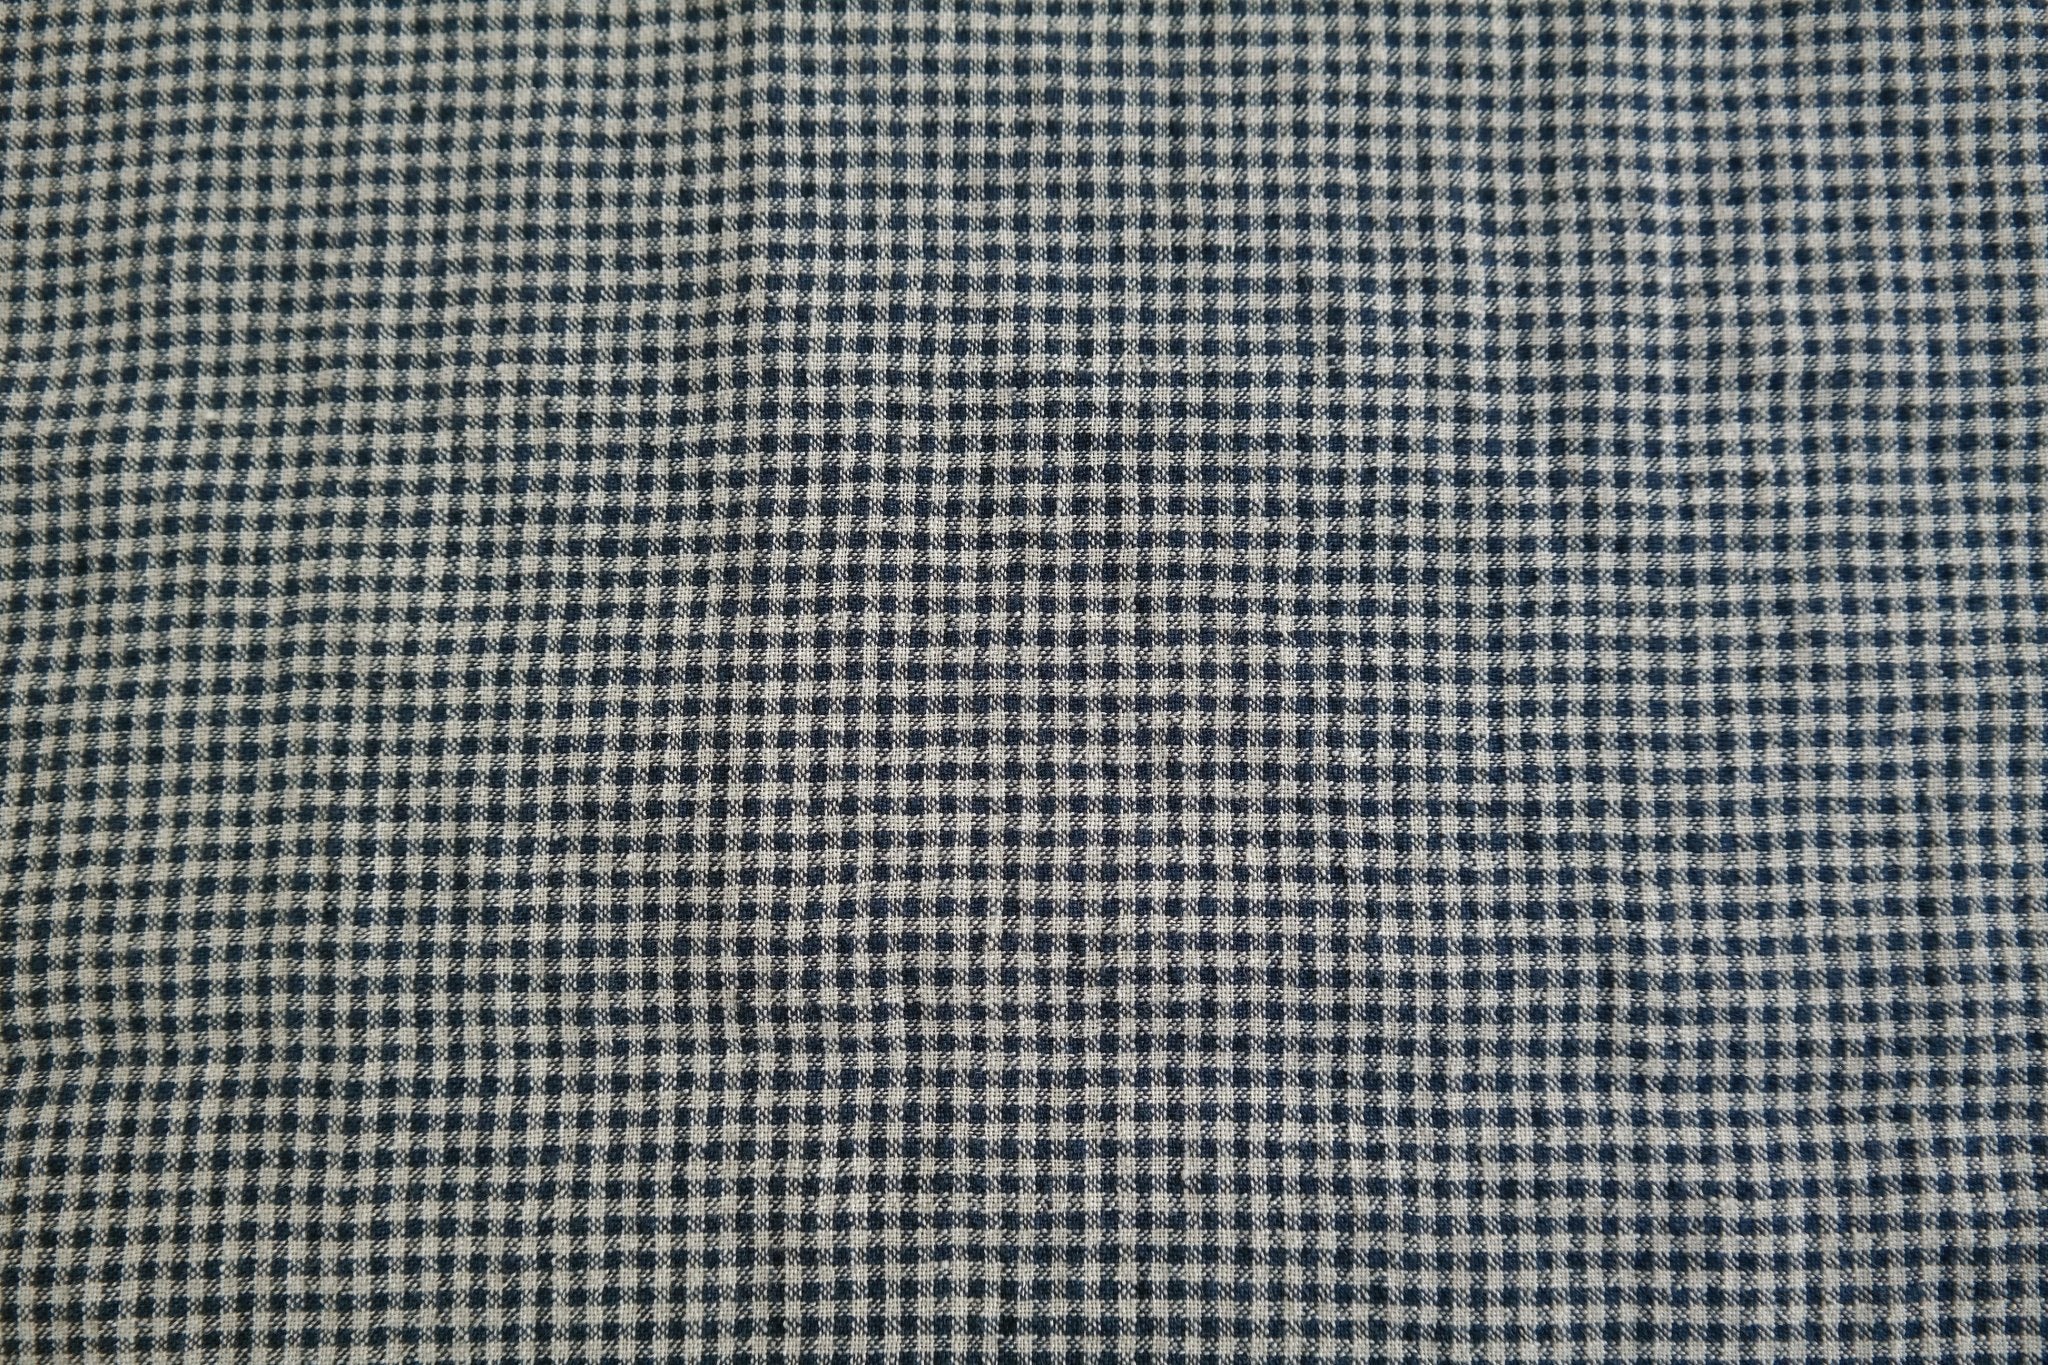 Linen Fabric Seersucker Gingham Check 7161 7235 - The Linen Lab - Navy 7235